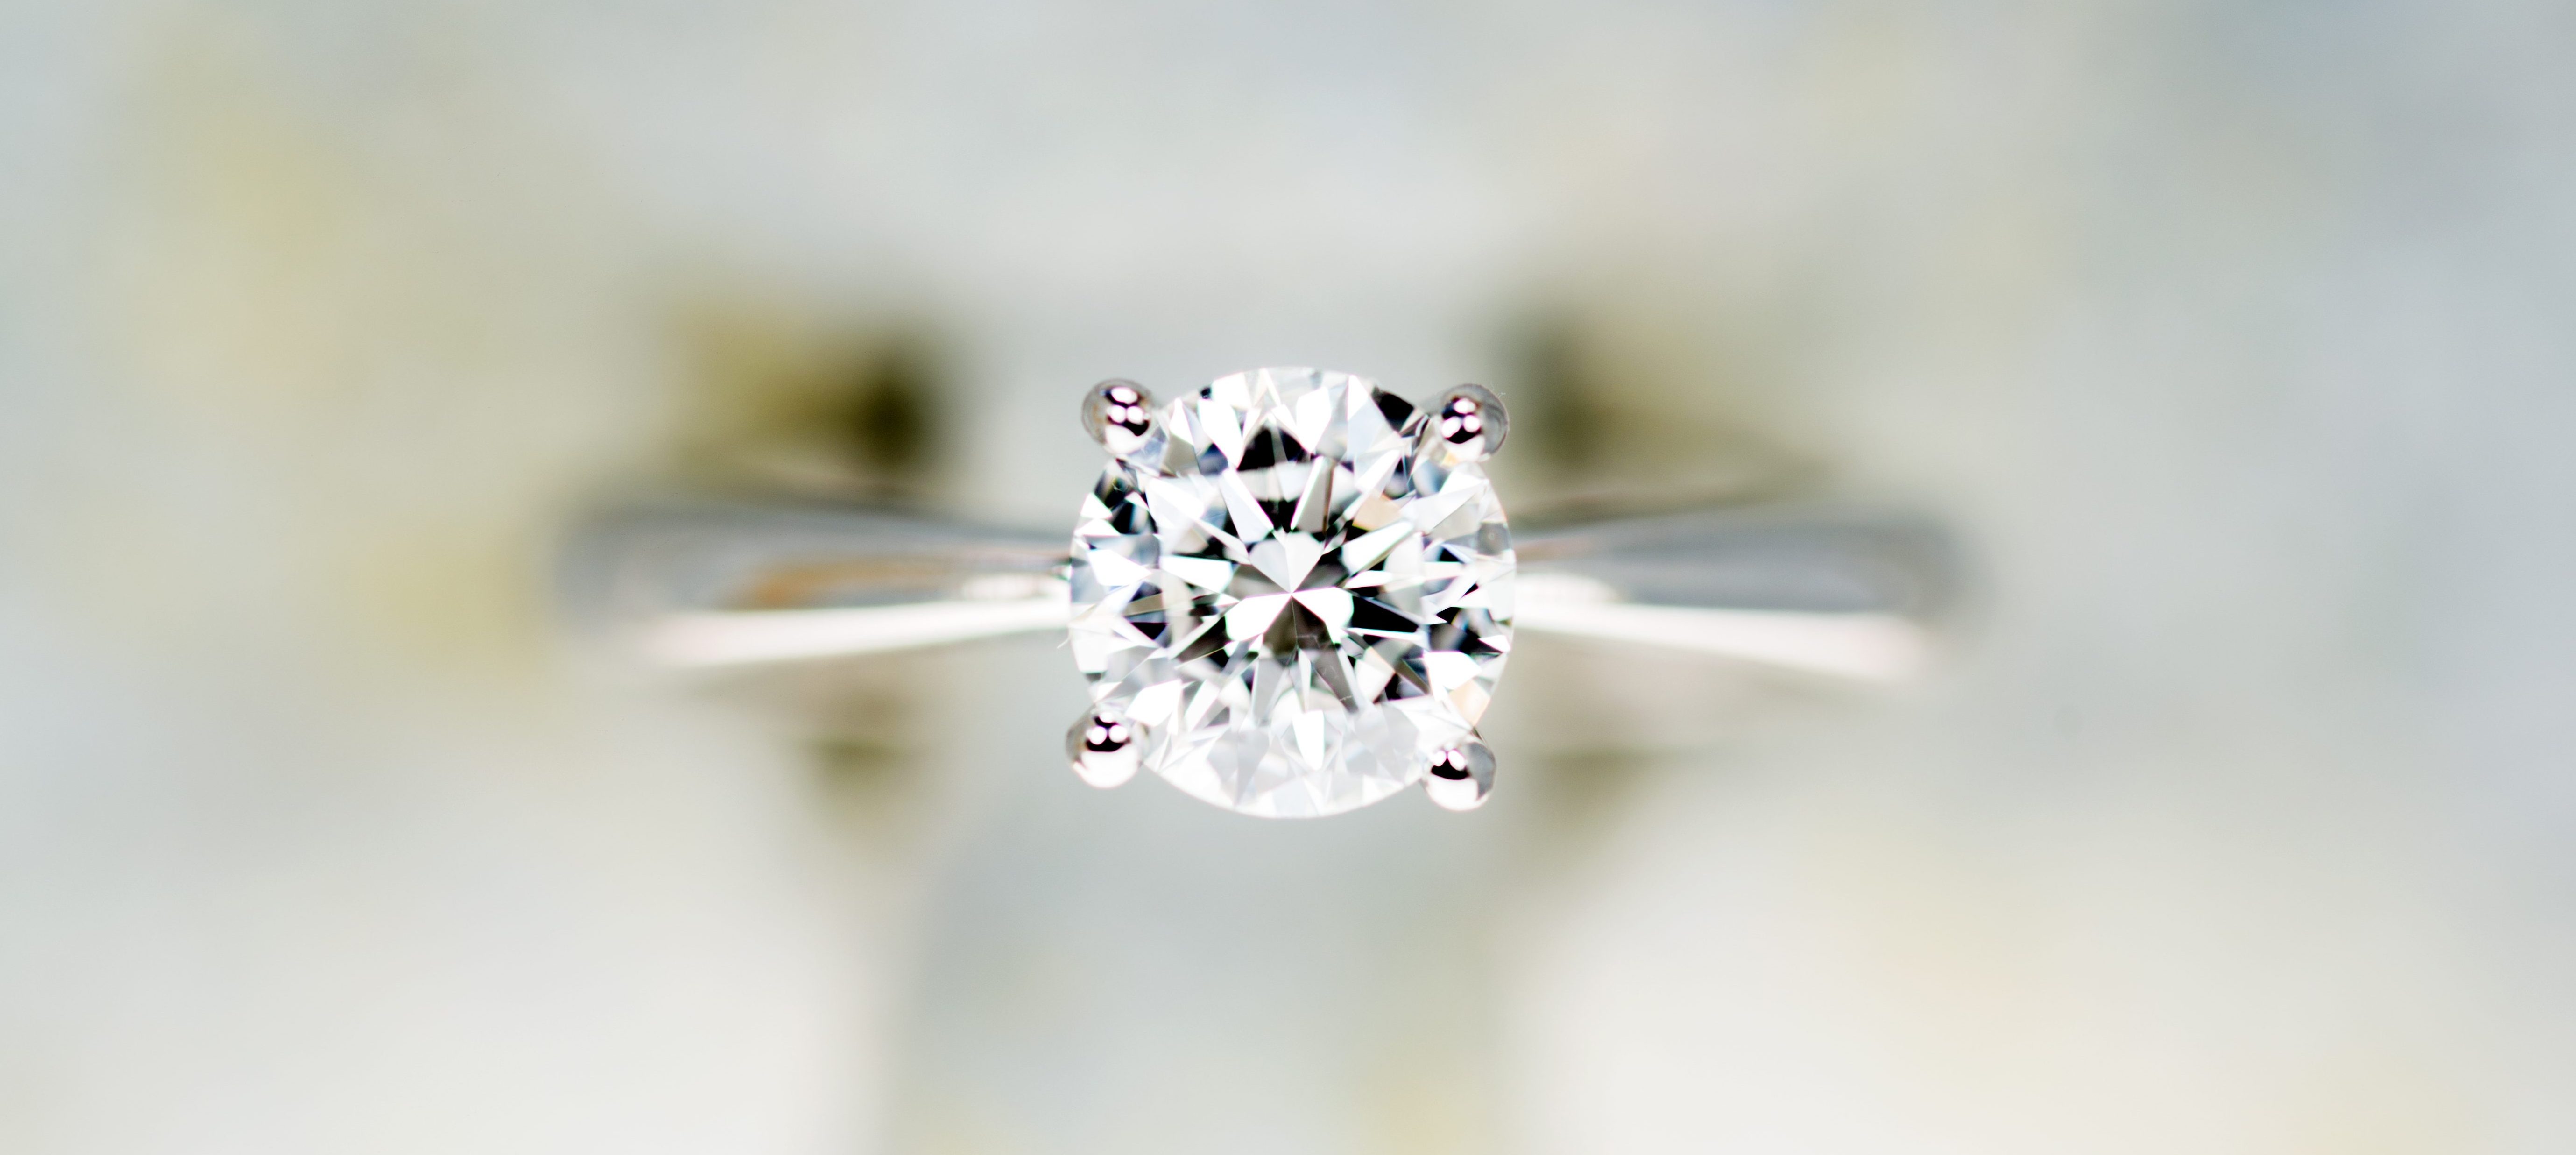 5 Reasons to Buy Lab-Grown Diamond Jewelry